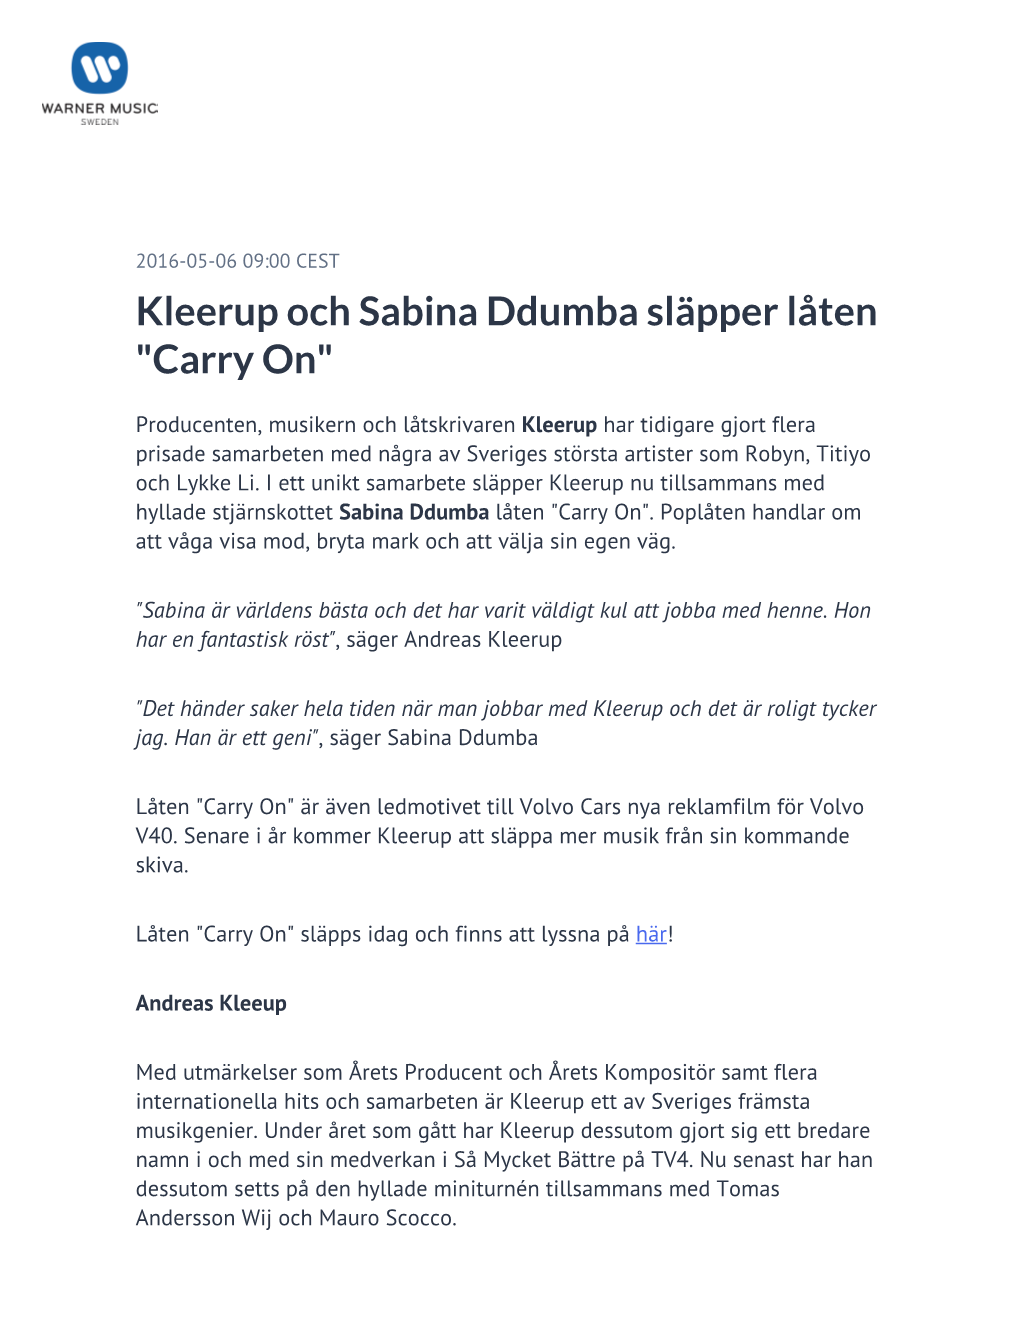 Kleerup Och Sabina Ddumba Släpper Låten "Carry On"